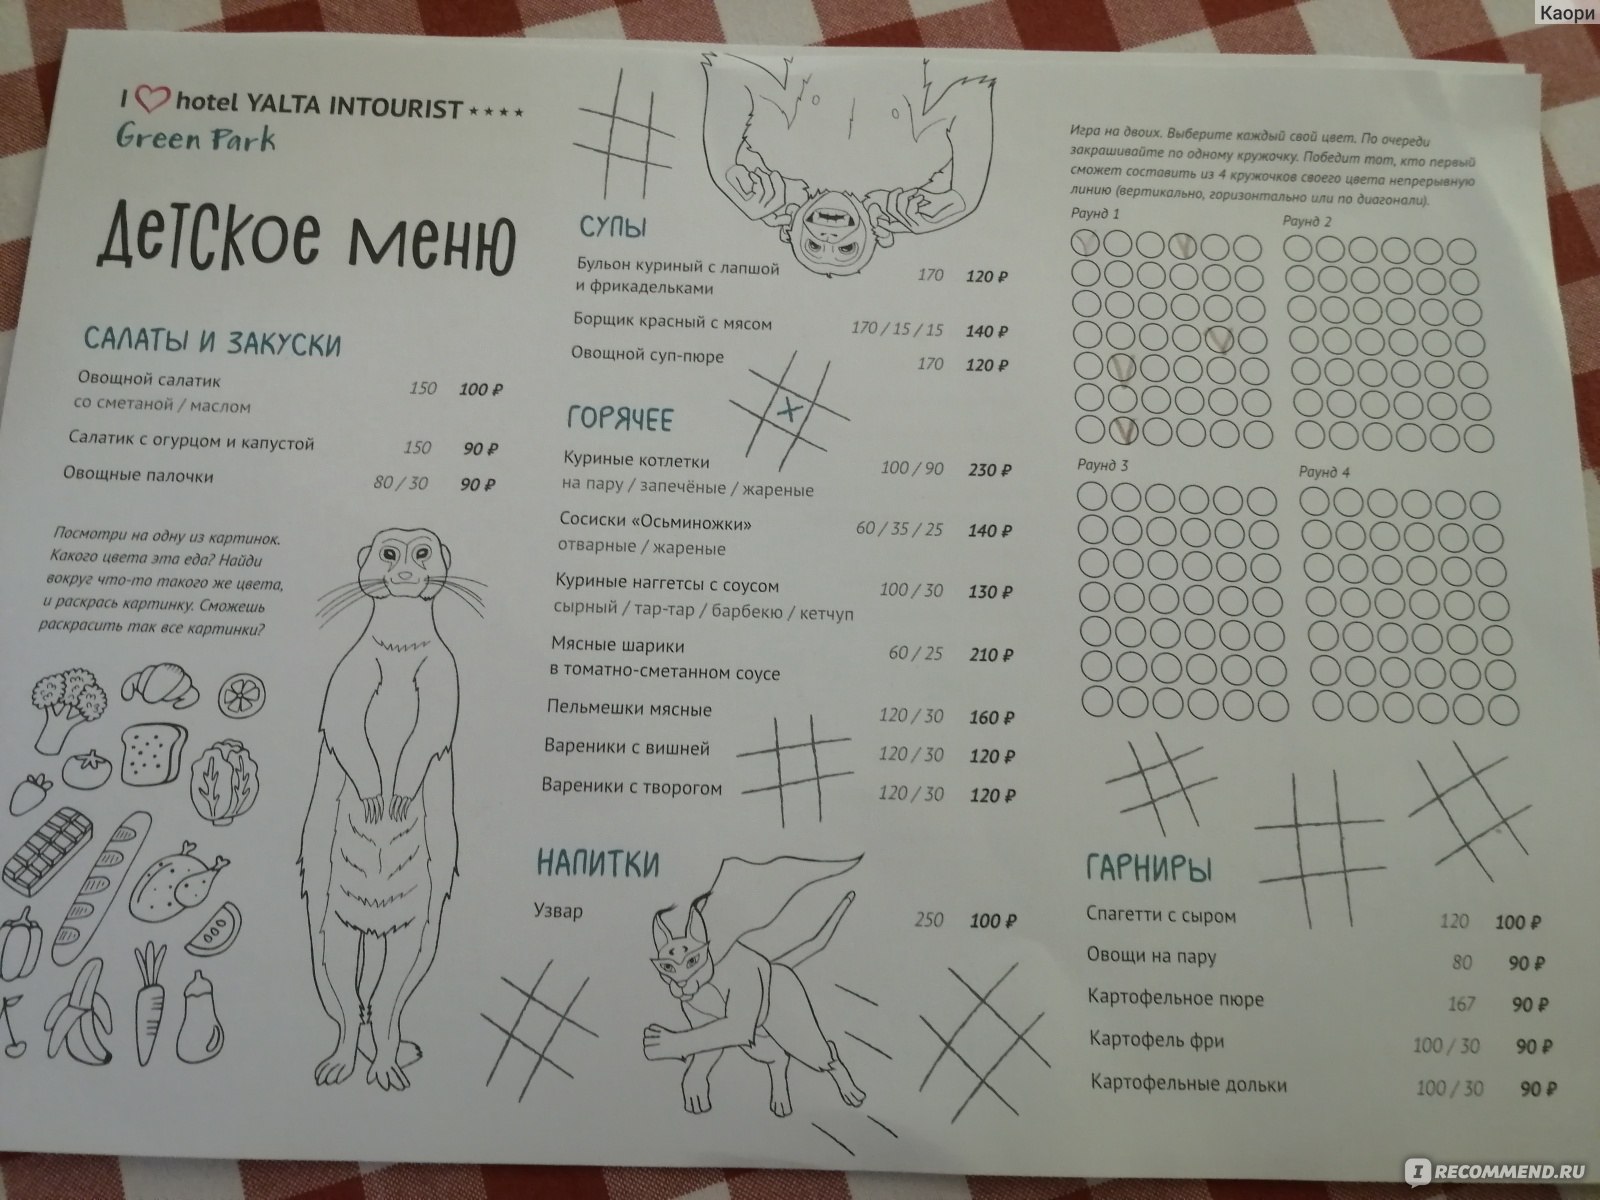 Детское меню и цены ресторана "Мамины пельмешки" Ялта интурист